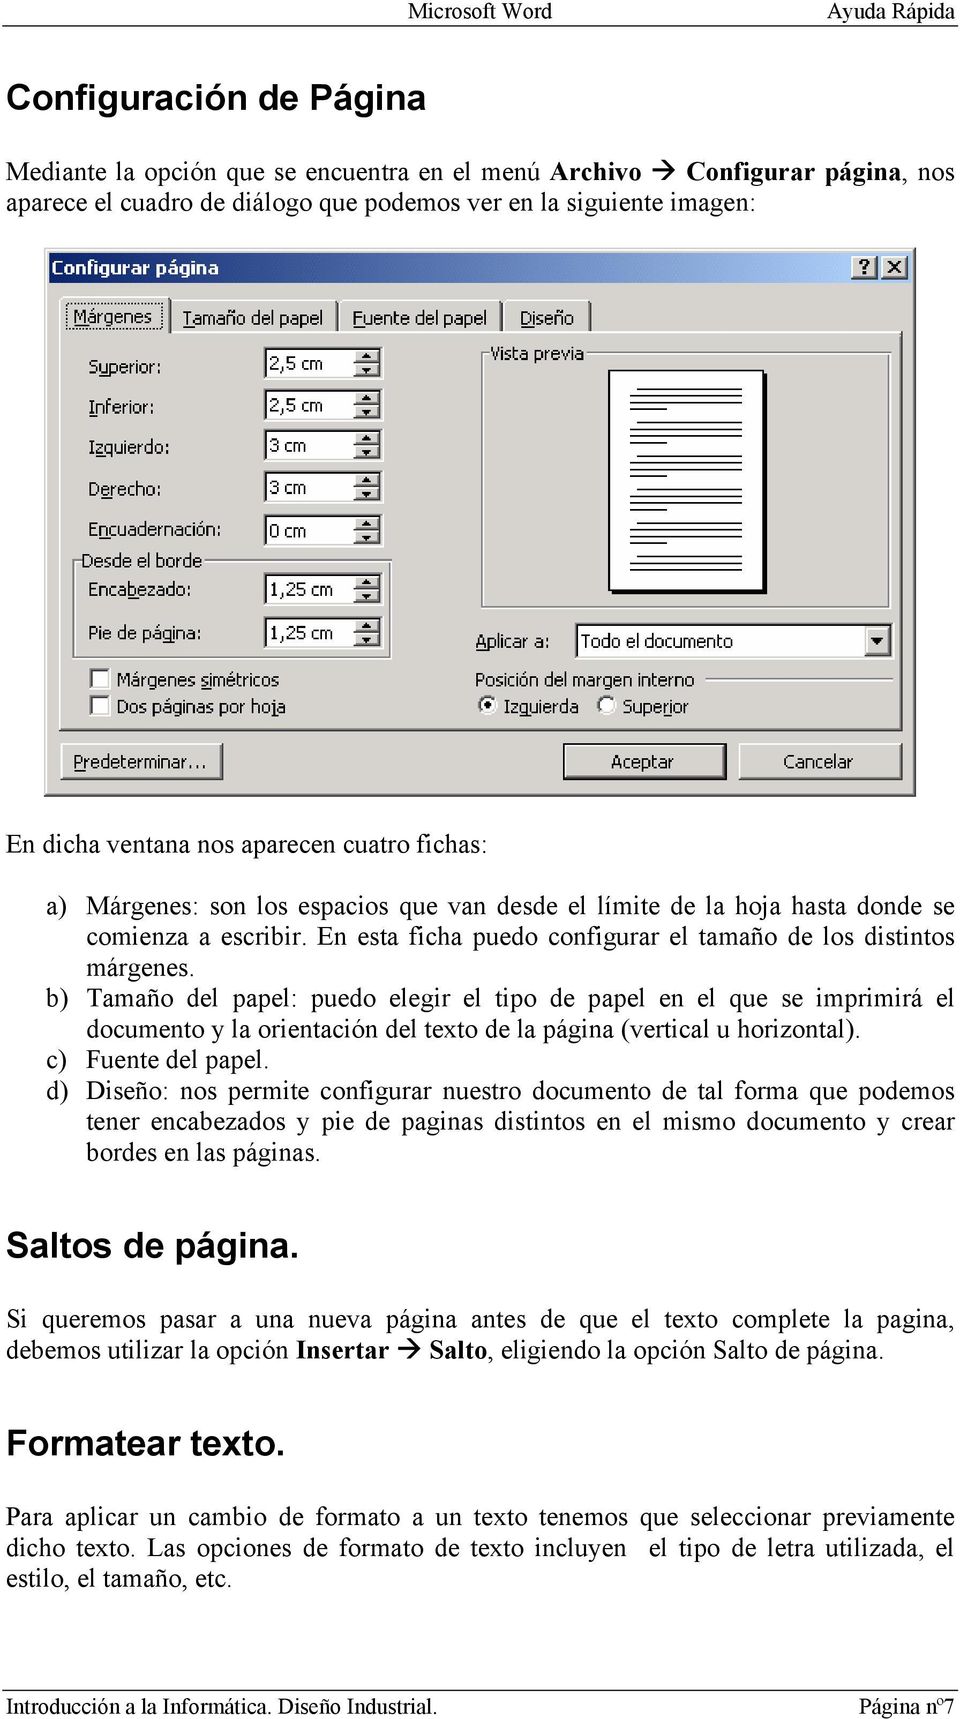 b) Tamaño del papel: puedo elegir el tipo de papel en el que se imprimirá el documento y la orientación del texto de la página (vertical u horizontal). c) Fuente del papel.